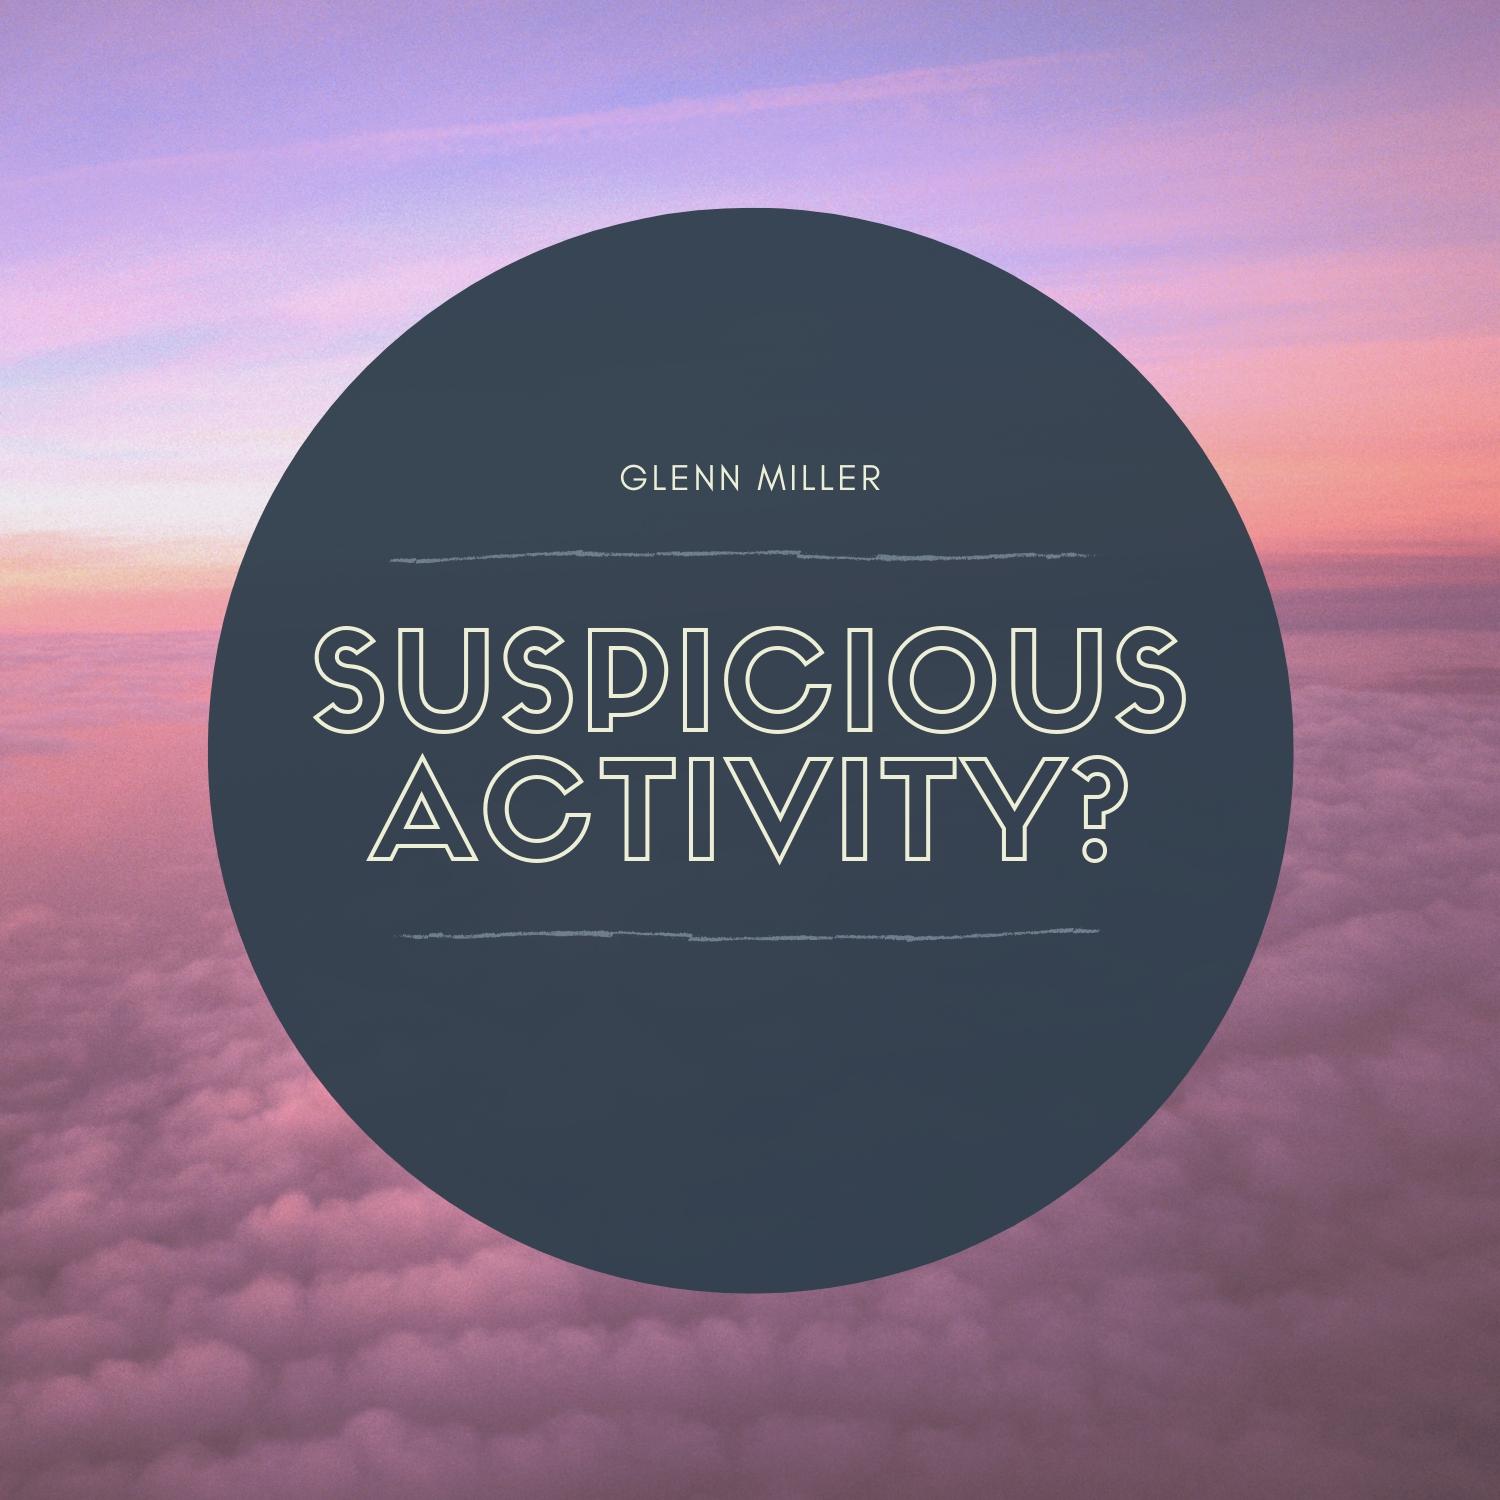 Suspicious Activity?